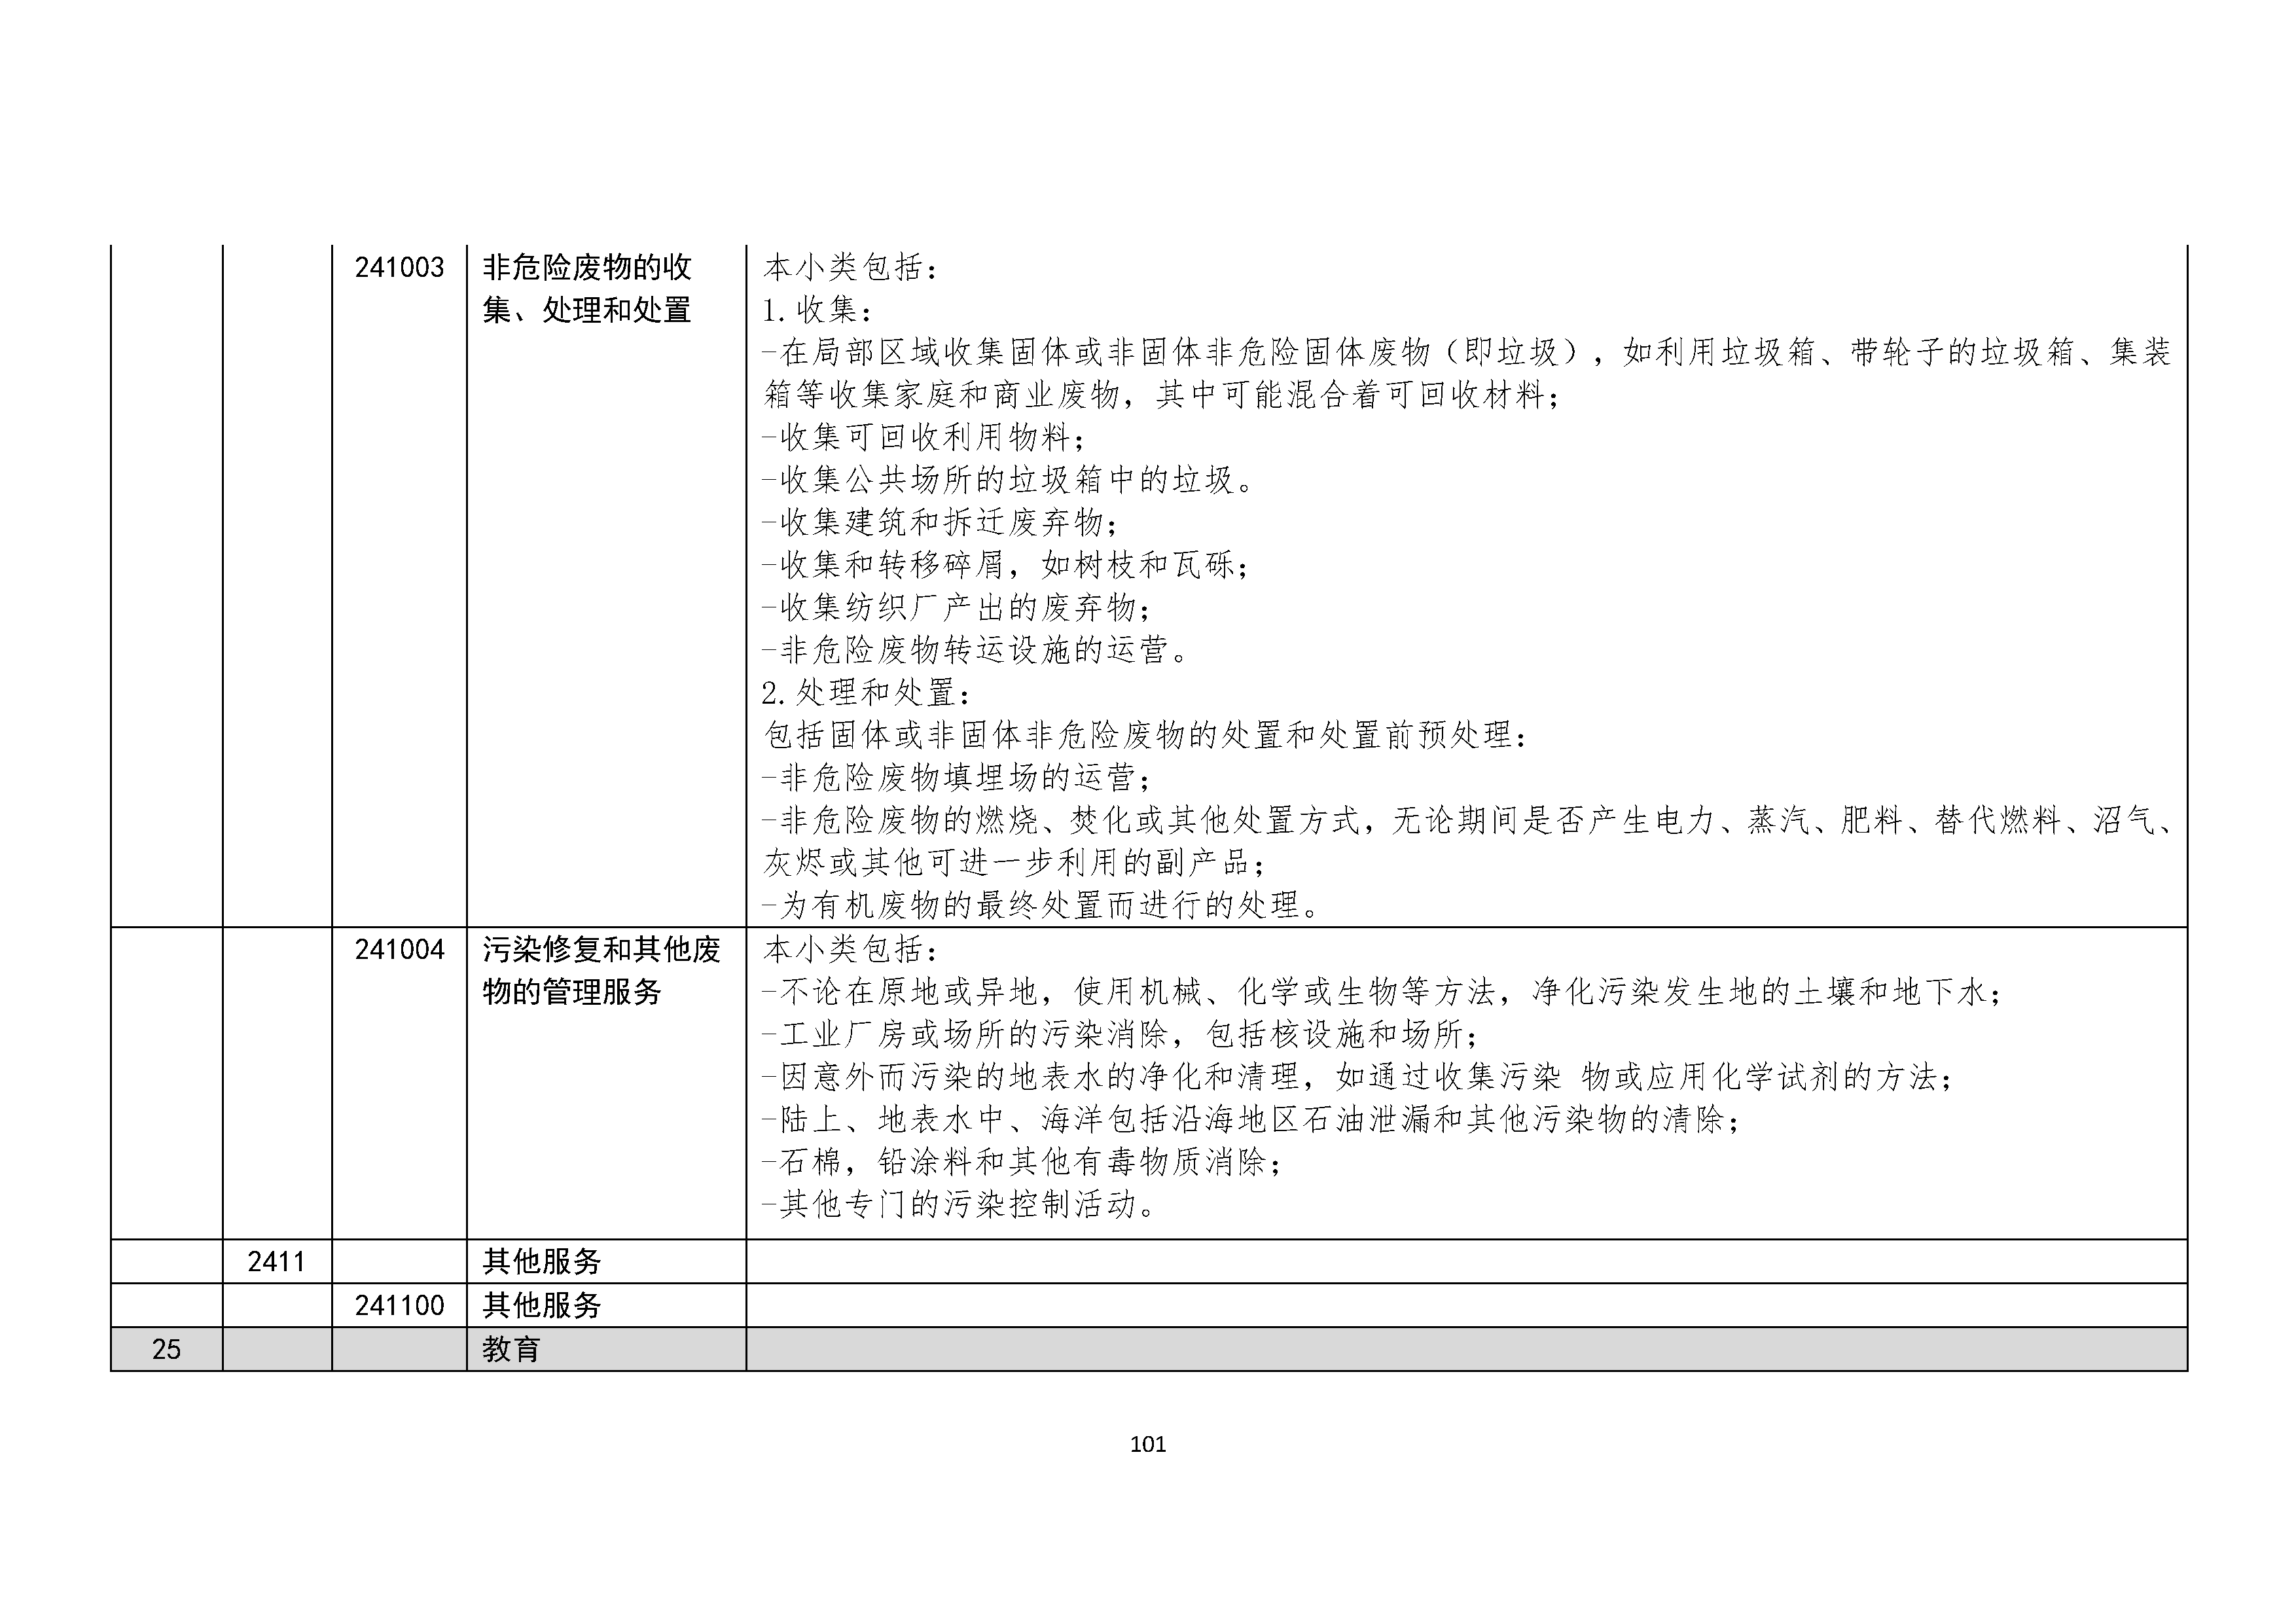 B.6《中国核能行业协会供应商评价供应商分类及产品专业范围划分规定》_页面_102.png